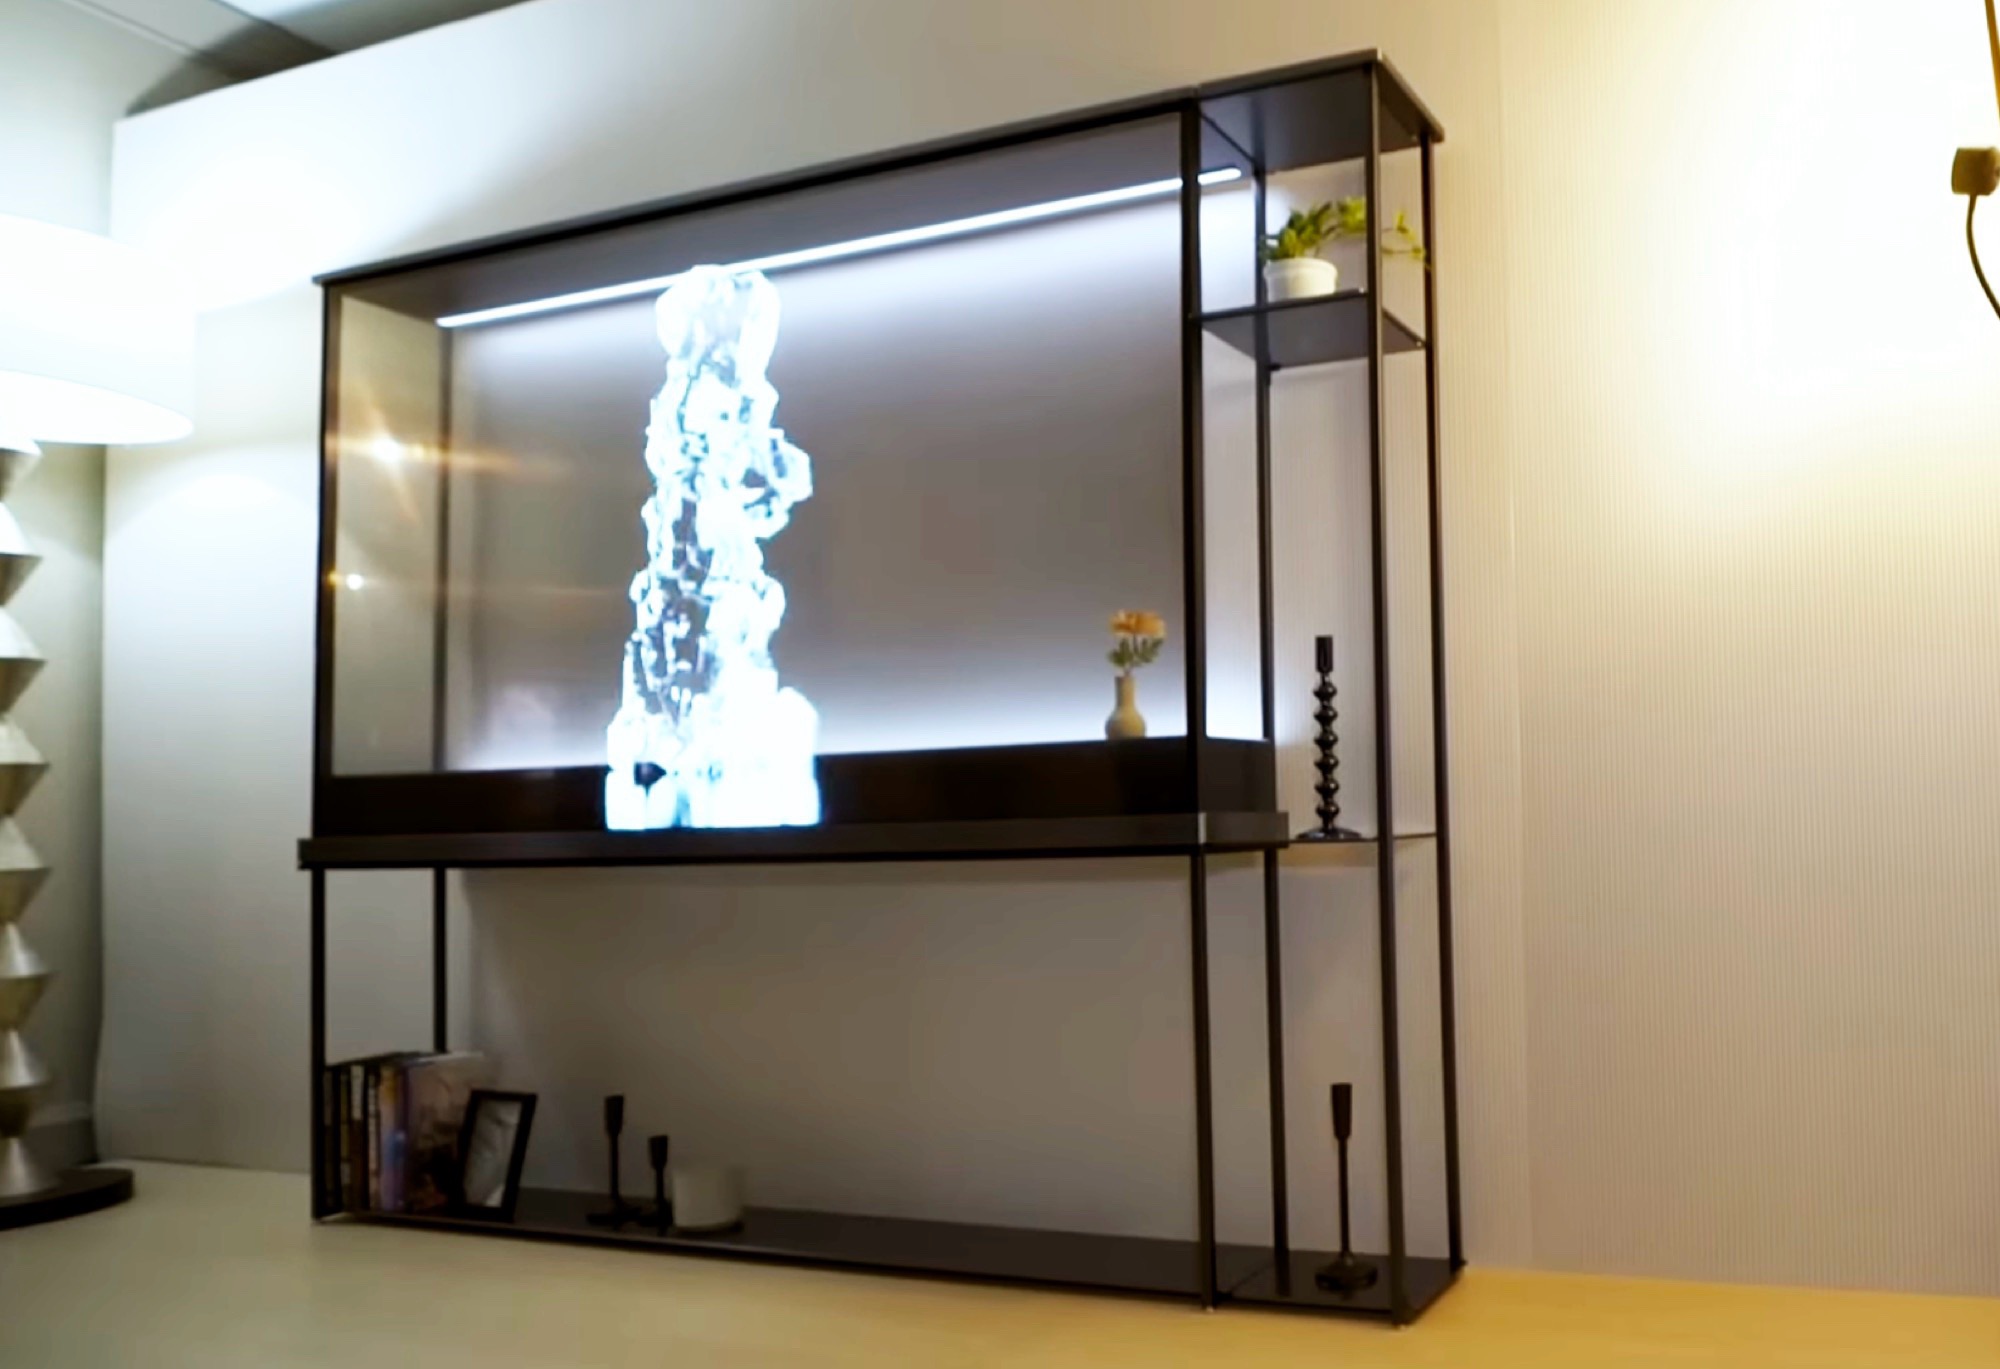 LG Signature OLED T, il primo televisore trasparente al mondo!